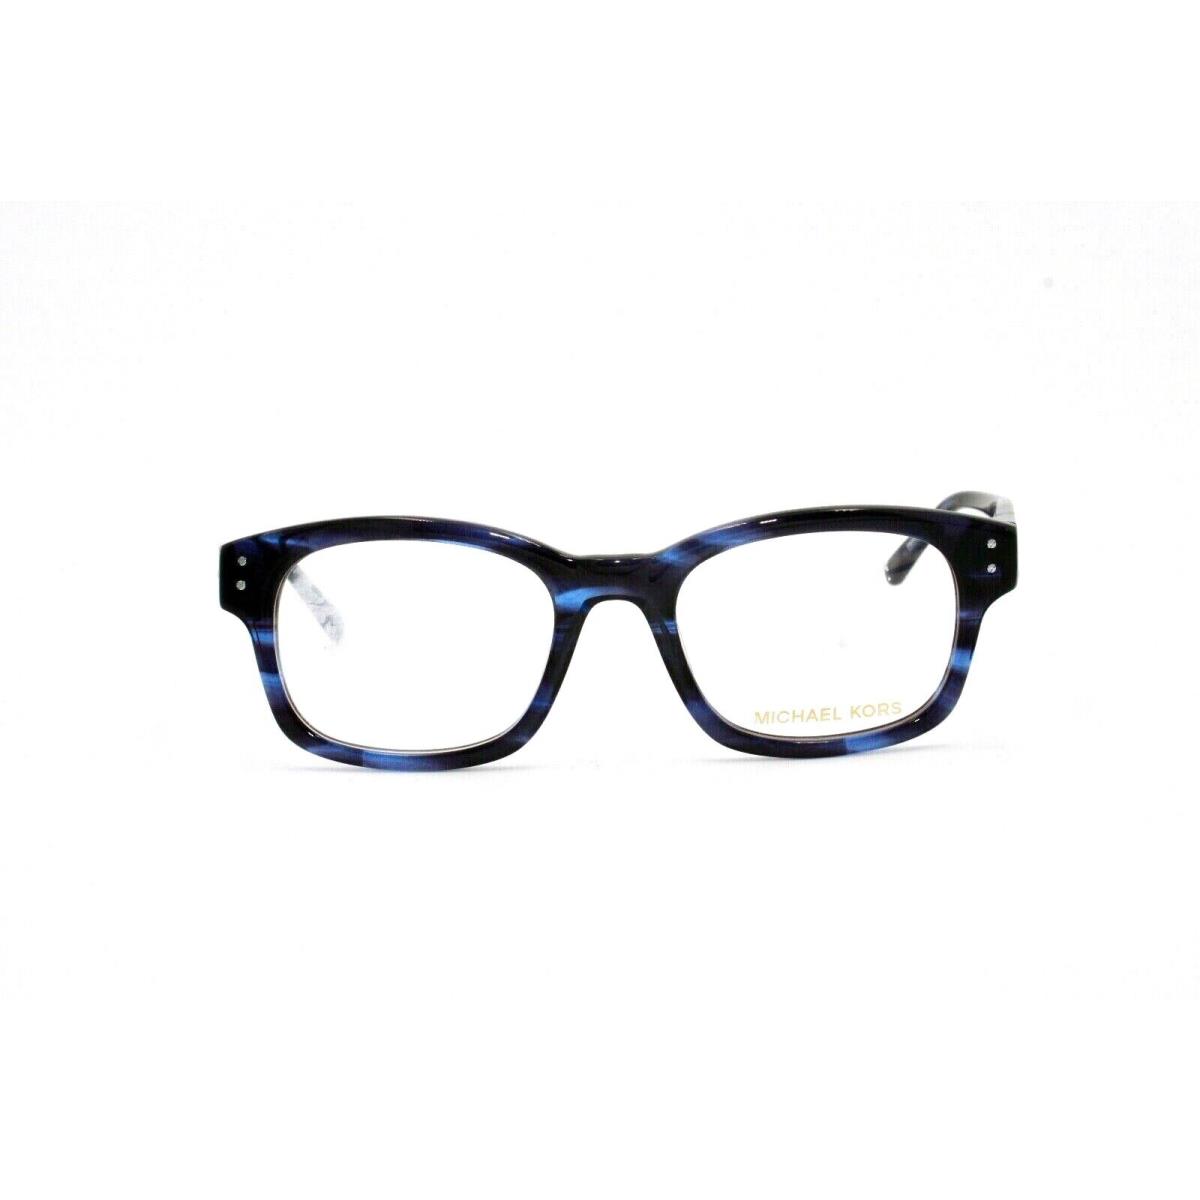 Michael Kors Eyeglasses Frame MK273M 435 50 20 140